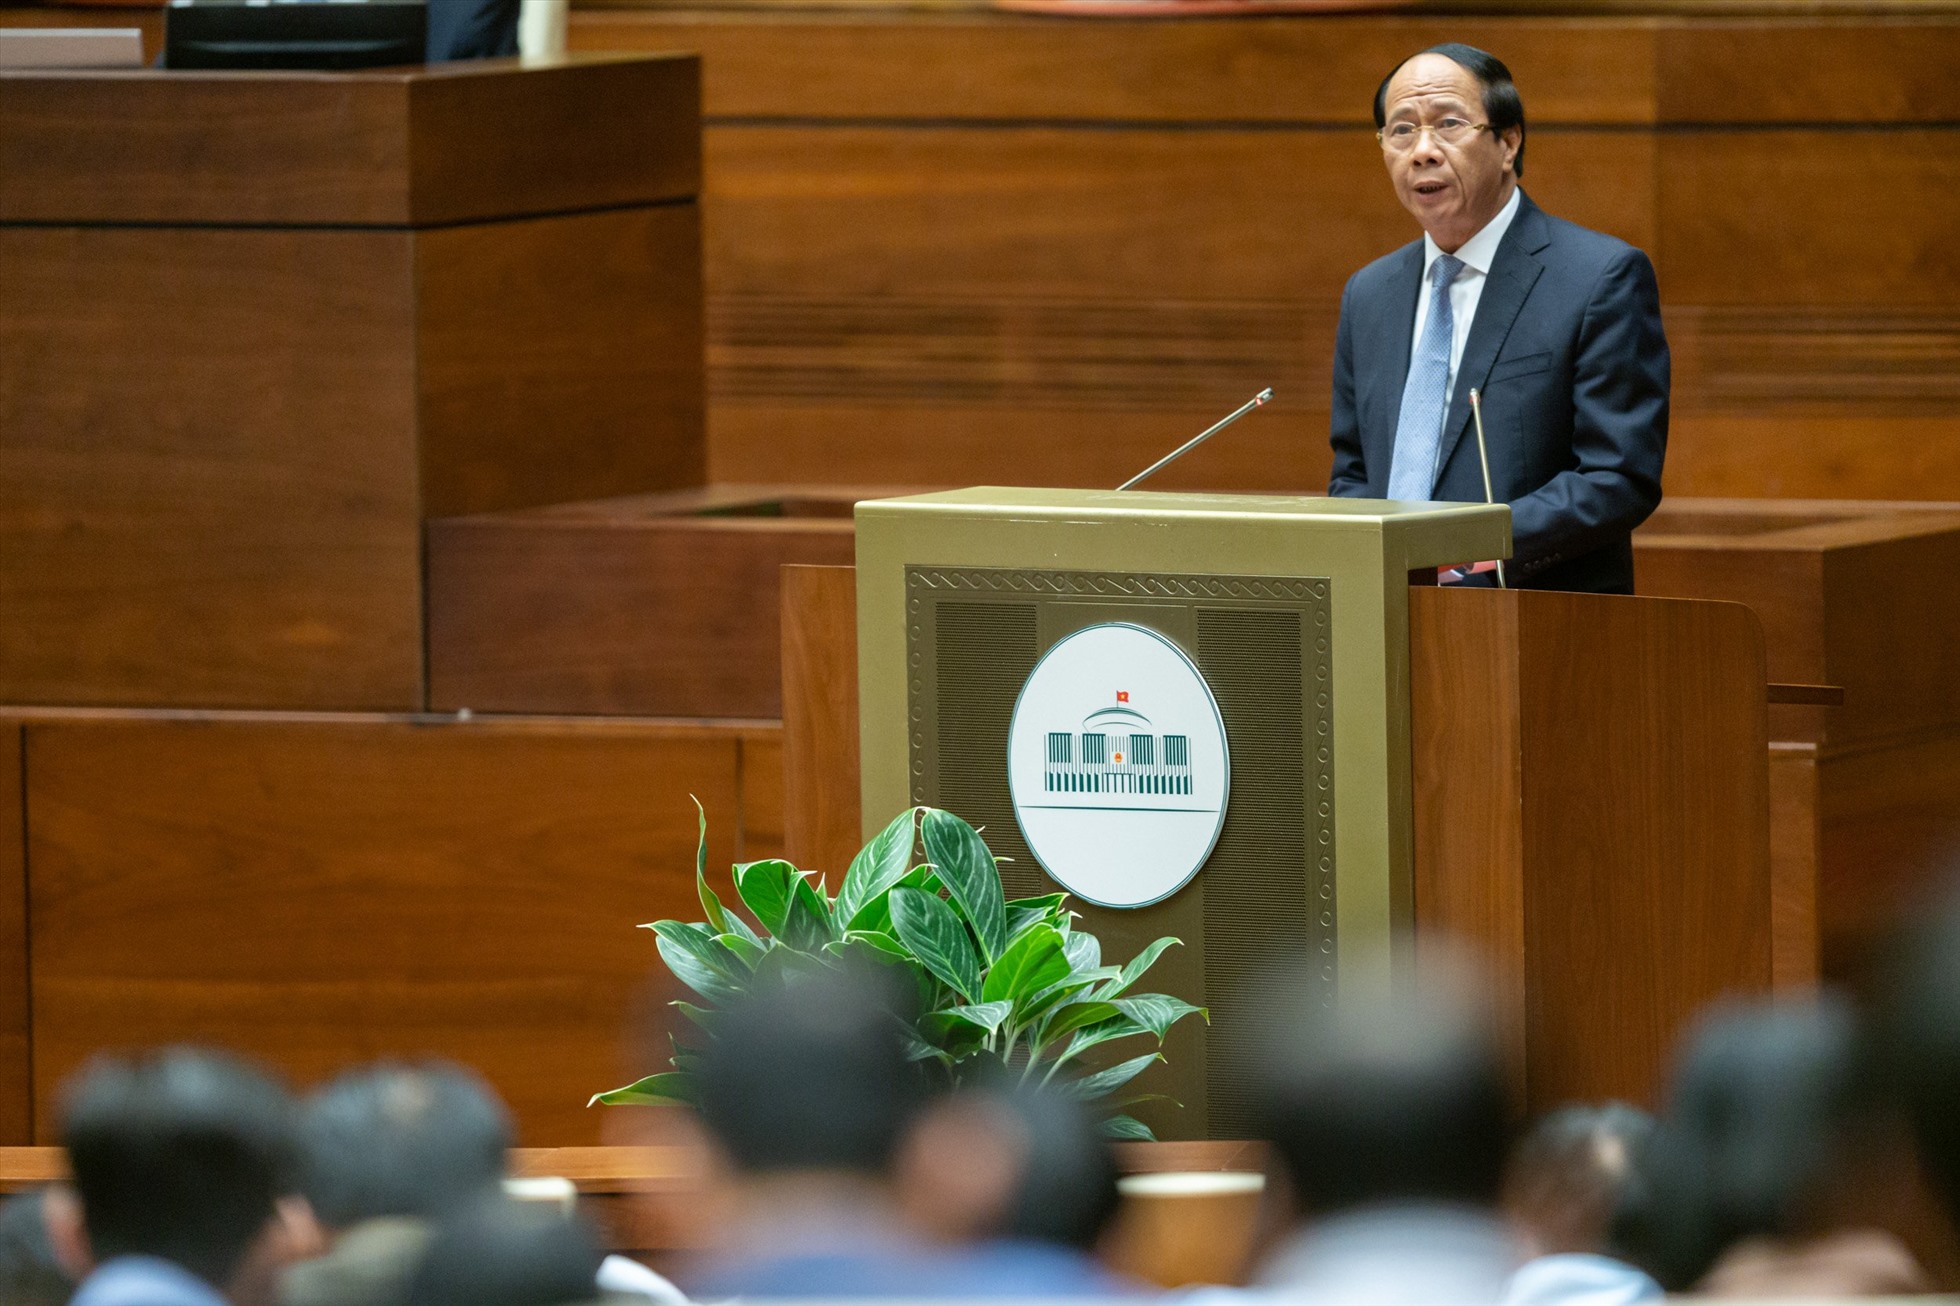 Phó Thủ tướng Chính phủ Lê Văn Thành trình bày tờ trình dự thảo Luật Đất đai (sửa đổi) trước Quốc hội.